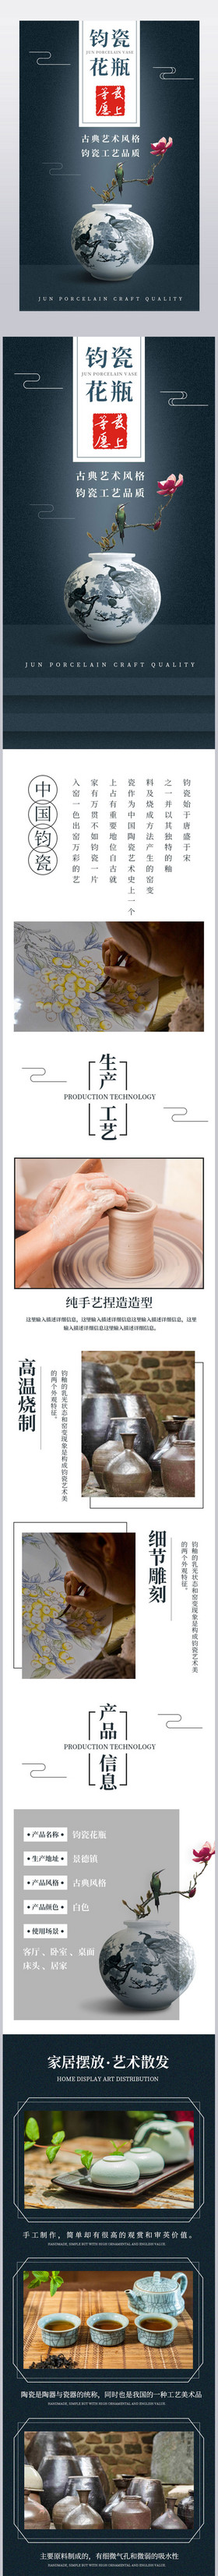 淘宝中国景德镇钧瓷陶瓷花瓶工艺产品详情页